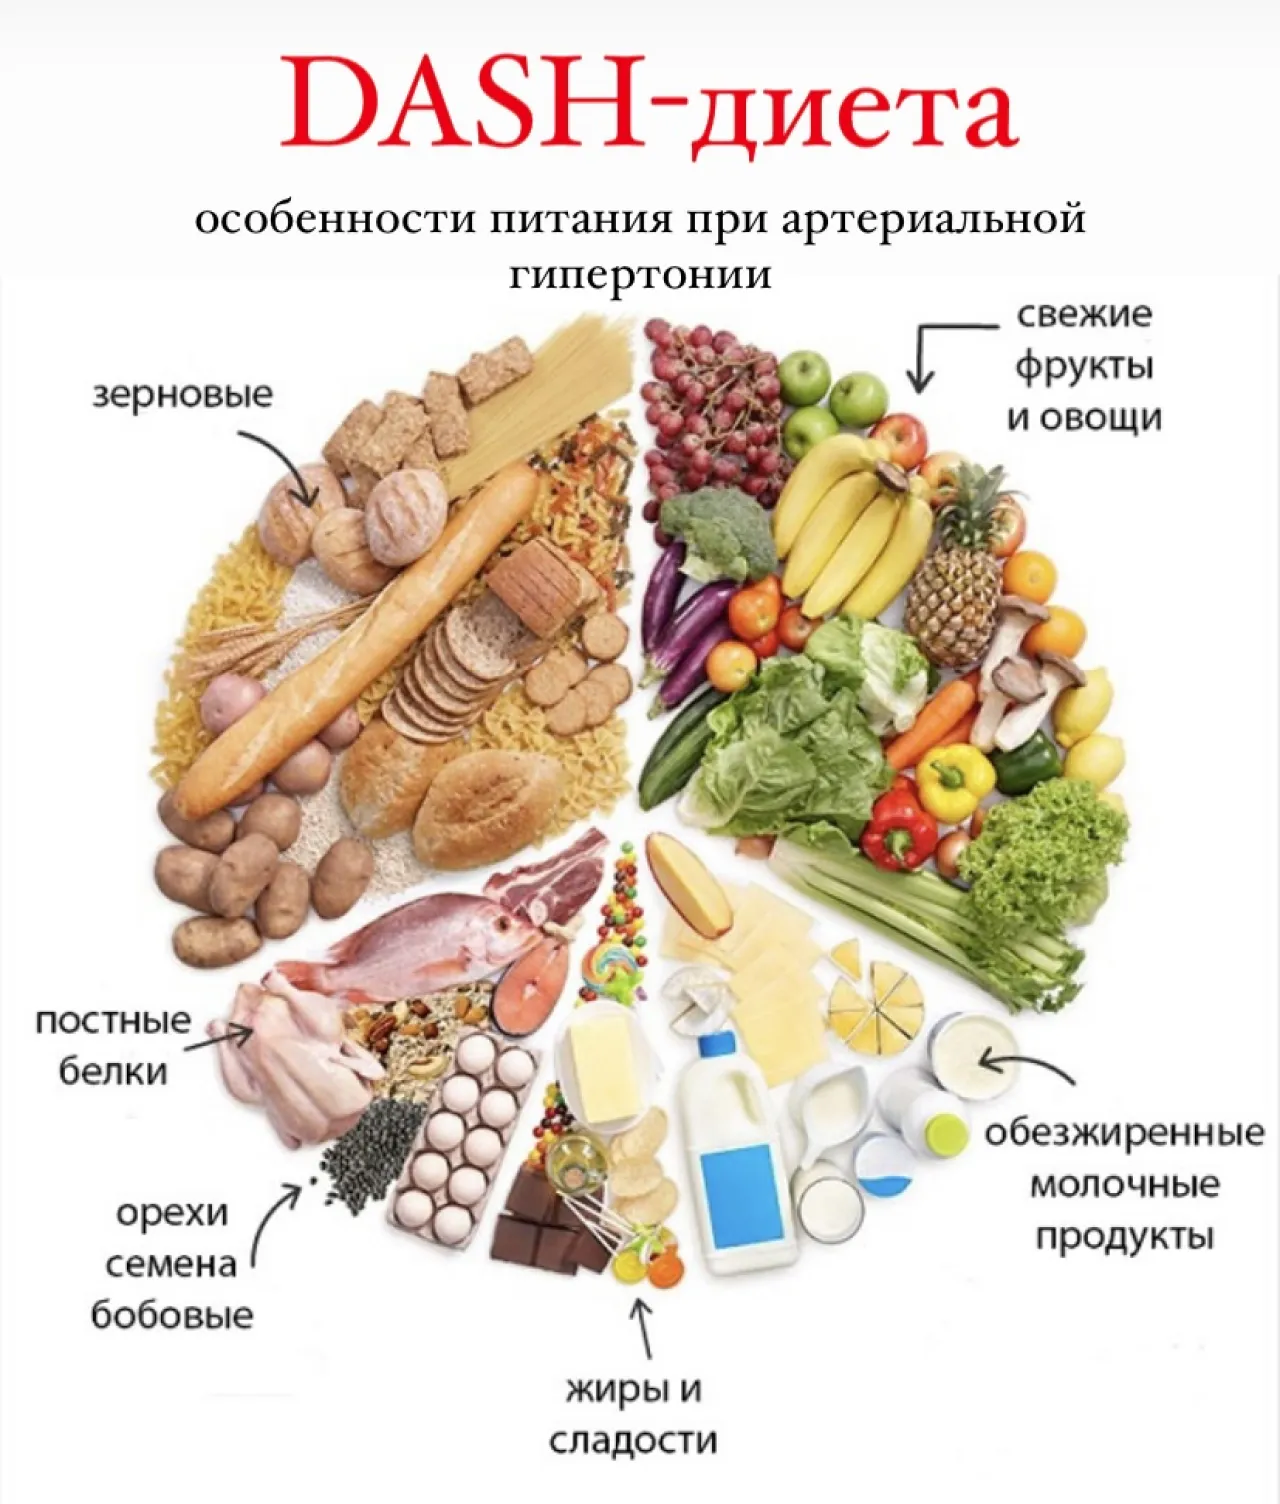 DASH-диета, питание при артериальной гипертонии | Центр общественного  здоровья